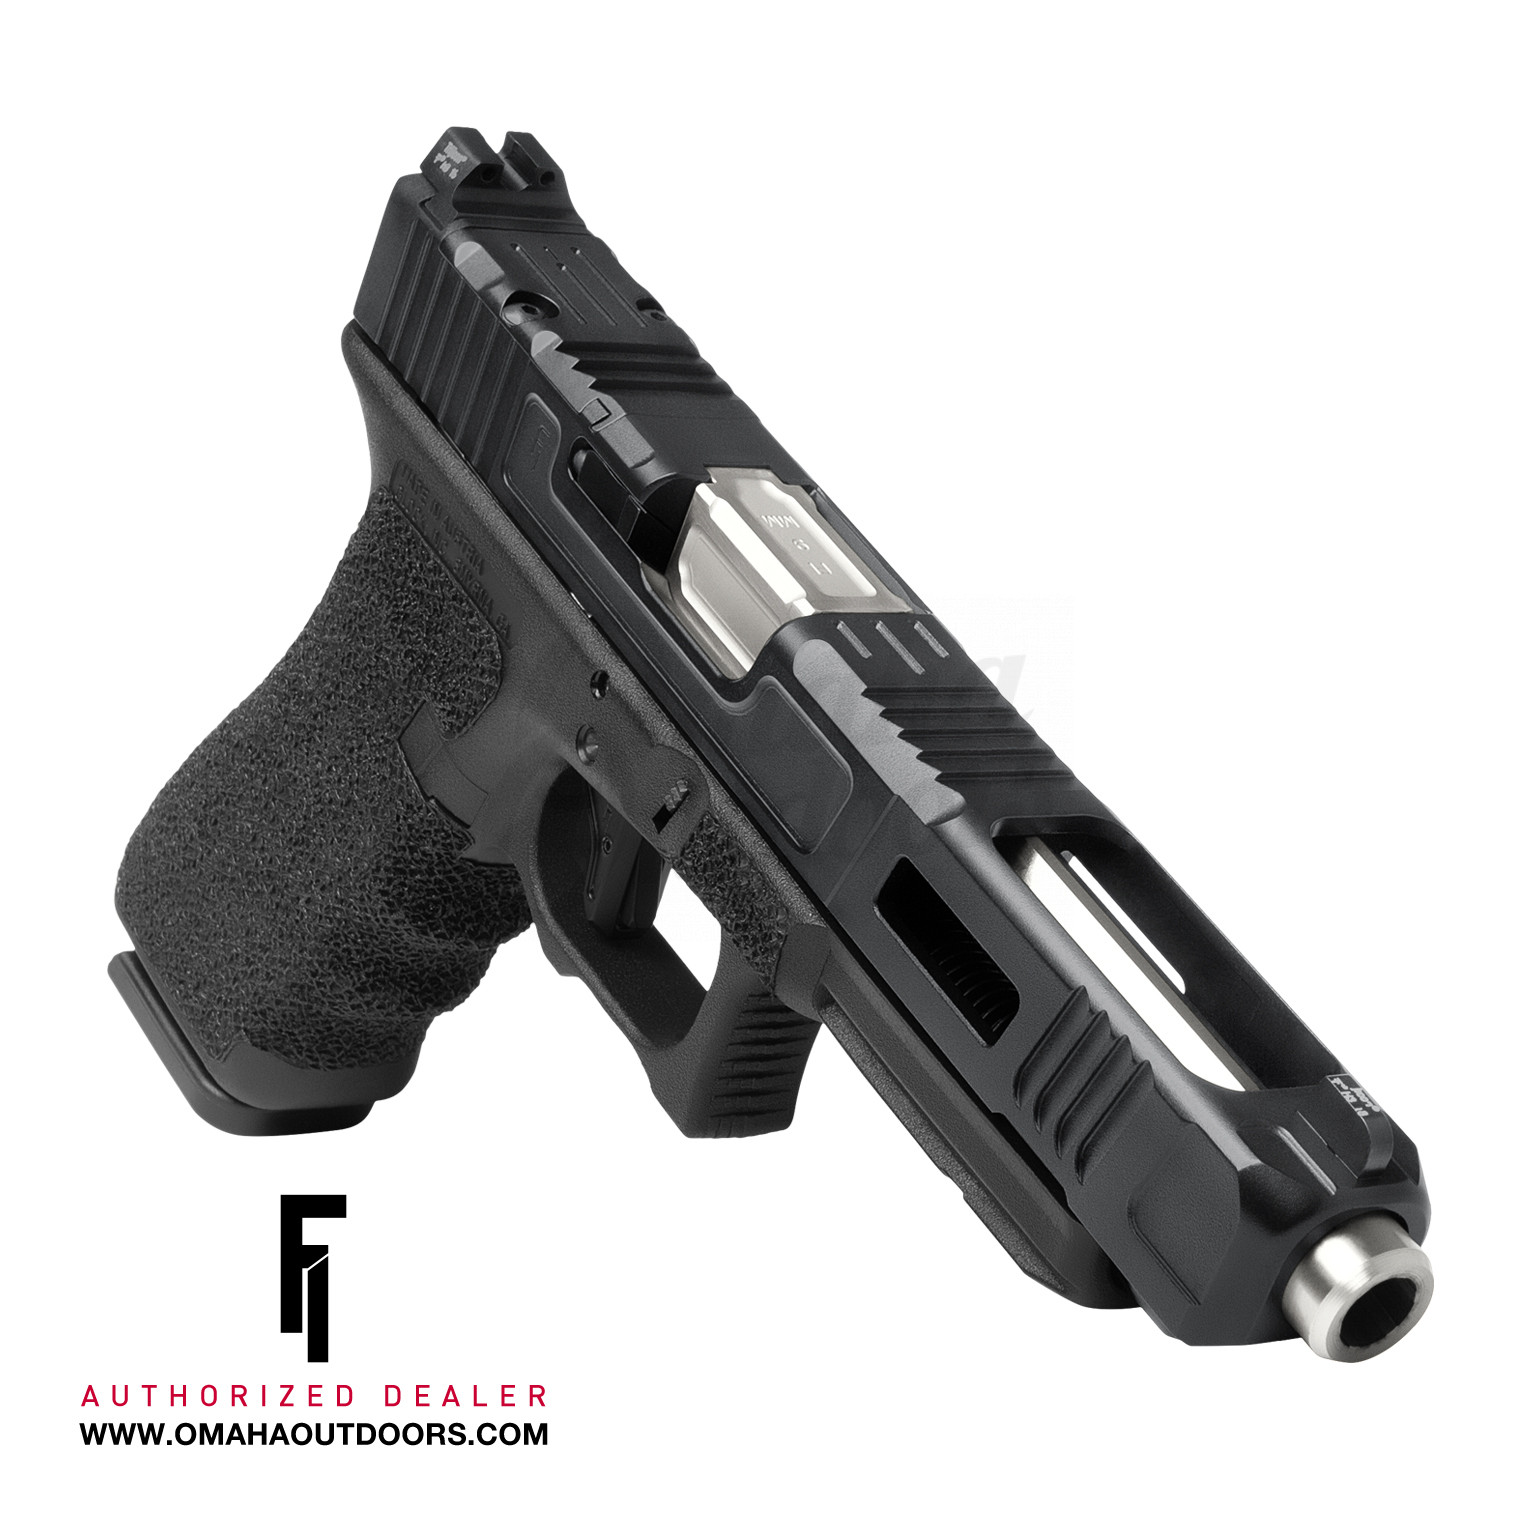 Fowler Mod Glock 34 Gen 3 MK3 17 RD 9mm Pistol Trijicon HD XR 